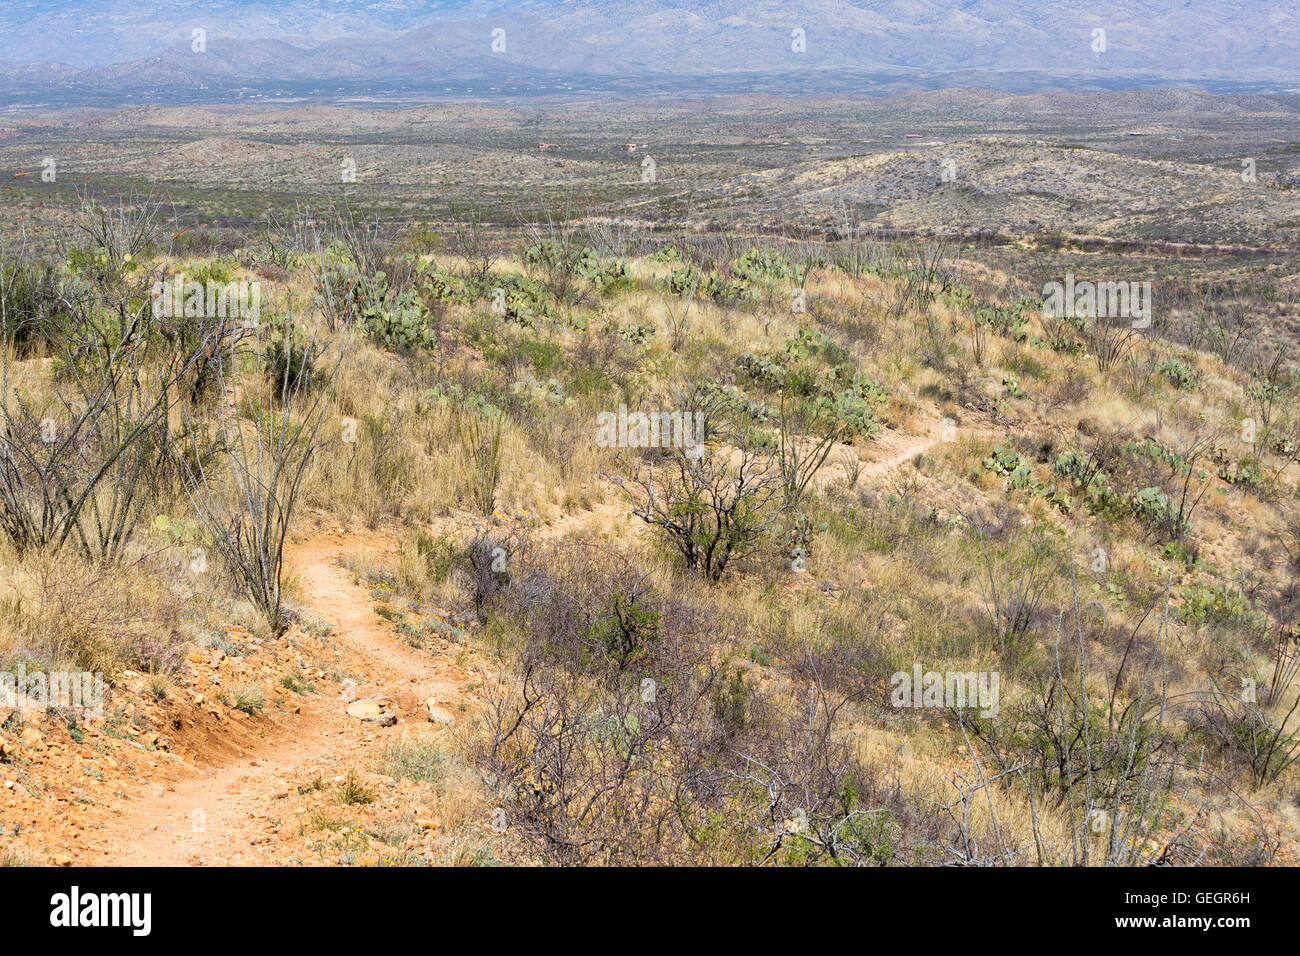 L'Arizona Trail descendant des collines de prairies vers les montagnes de Rincon. Las Cienegas National Conservation Area, Arizona Banque D'Images